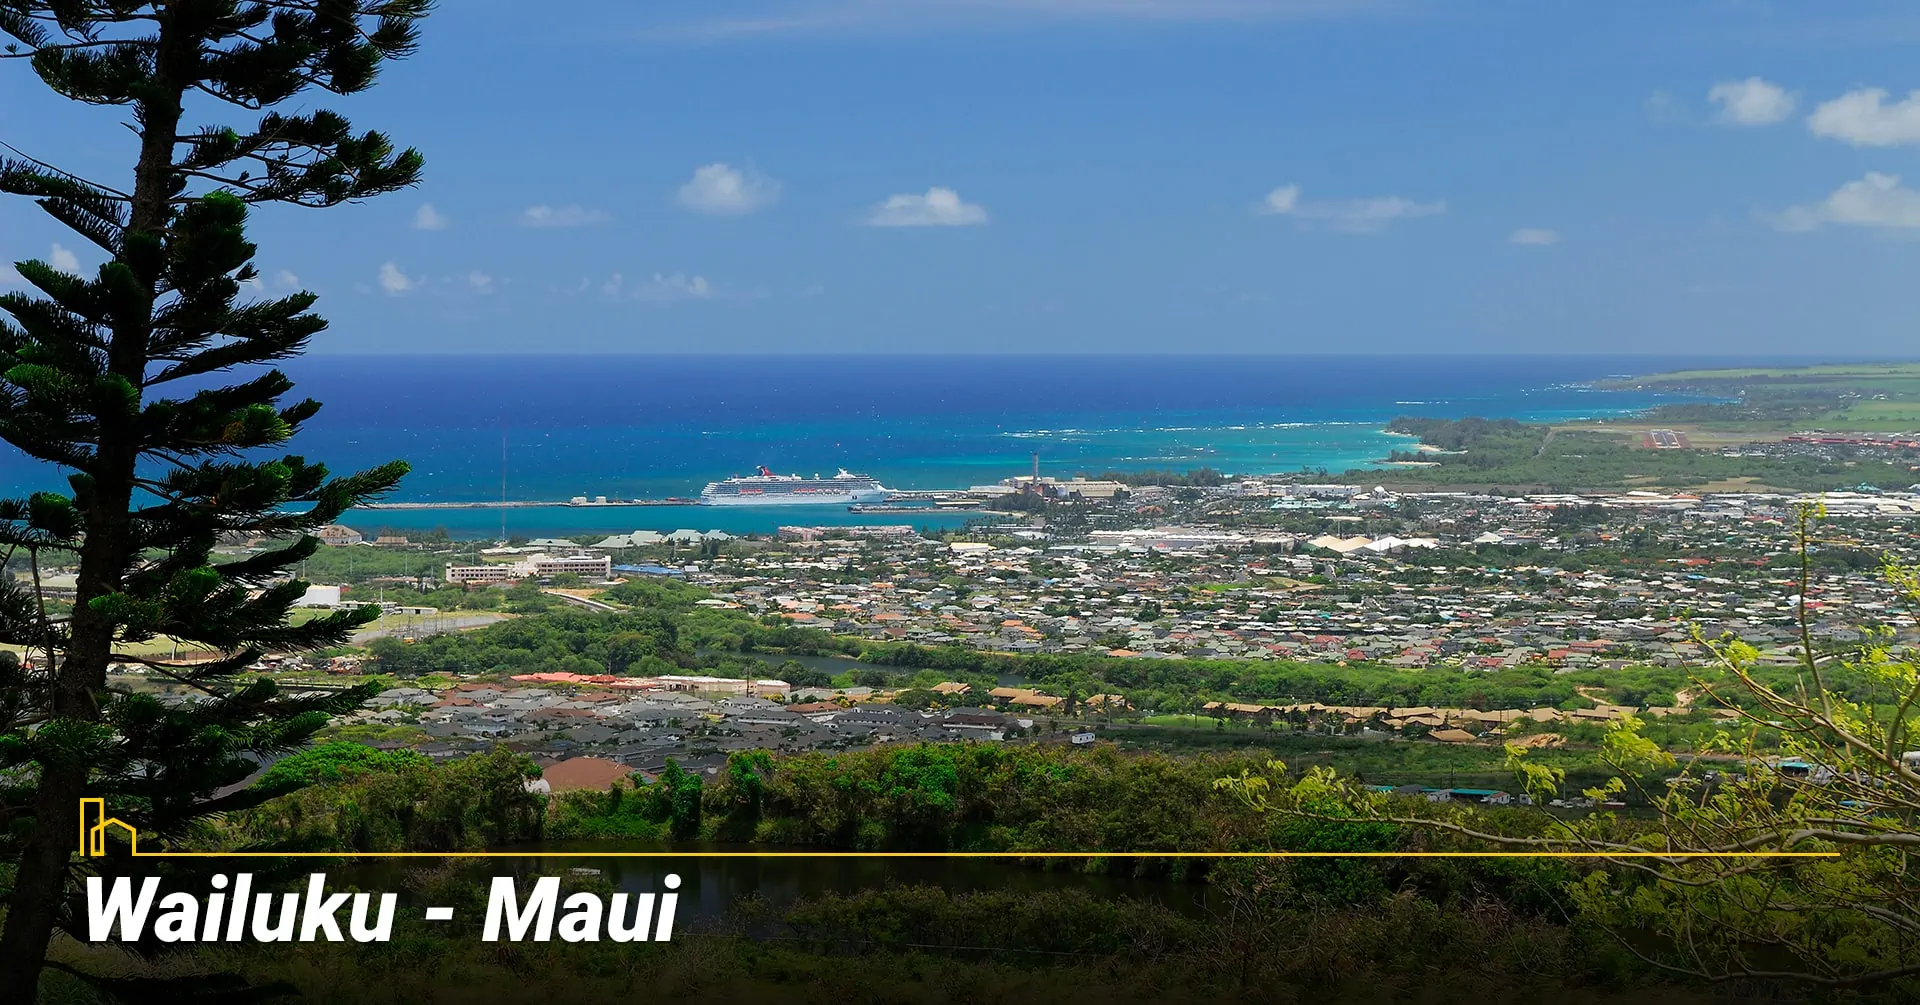 Wailuku - Maui